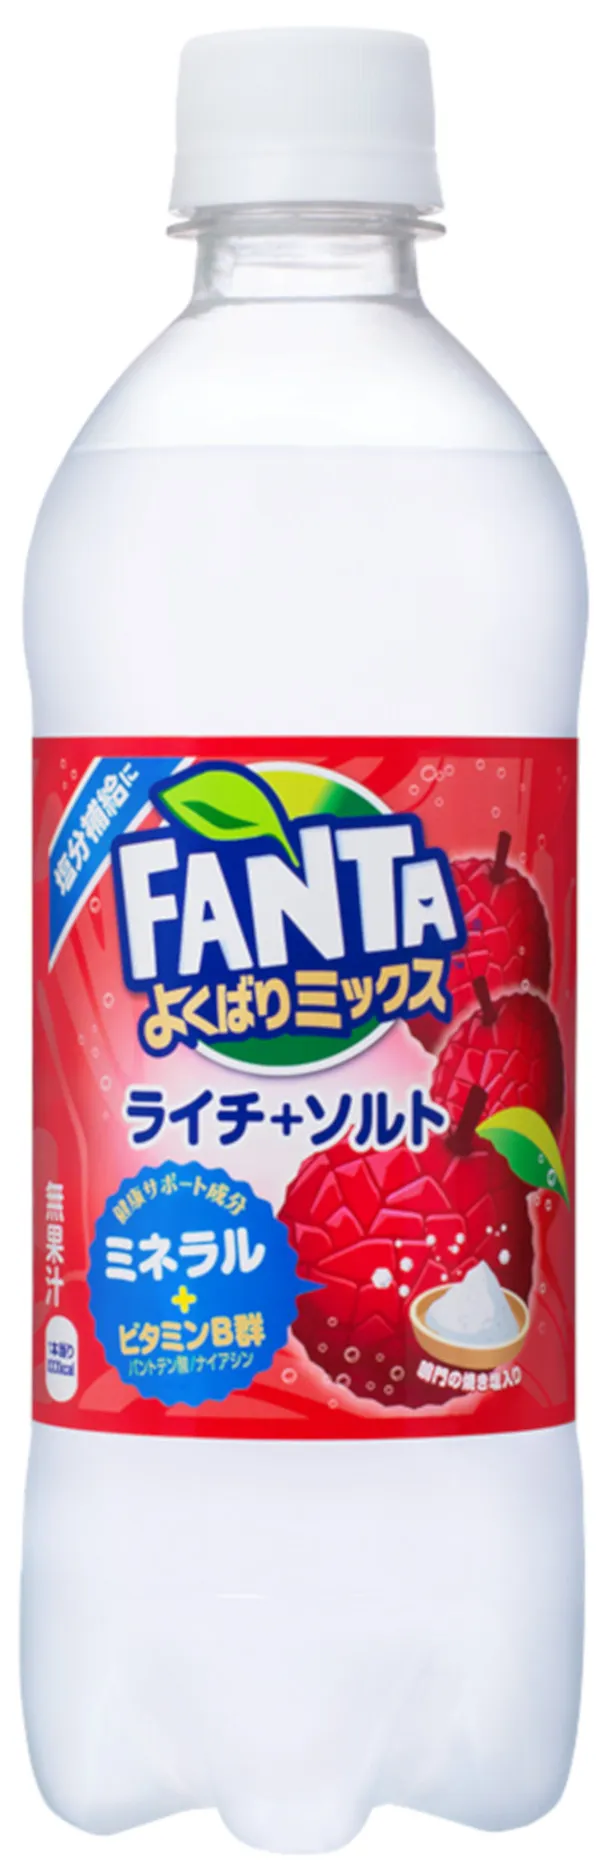 「ファンタ  よくばりミックス ライチ＋ソルト」は7月8日(月)発売